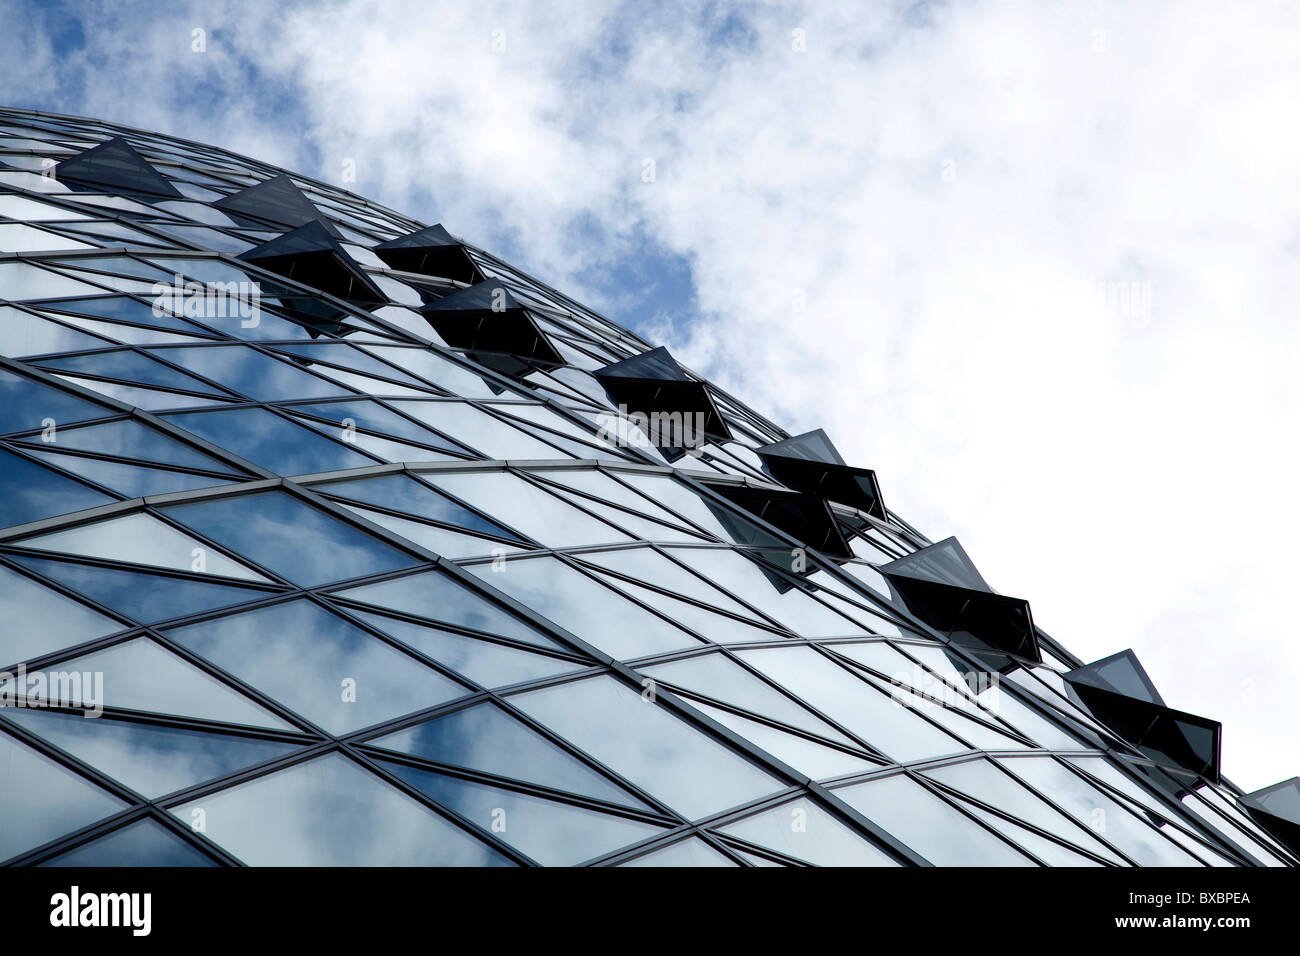 Sede dell'assicurazione Swiss-Re, Swiss Re Building, Swiss Re Tower in London, England, Regno Unito, Europa Foto Stock